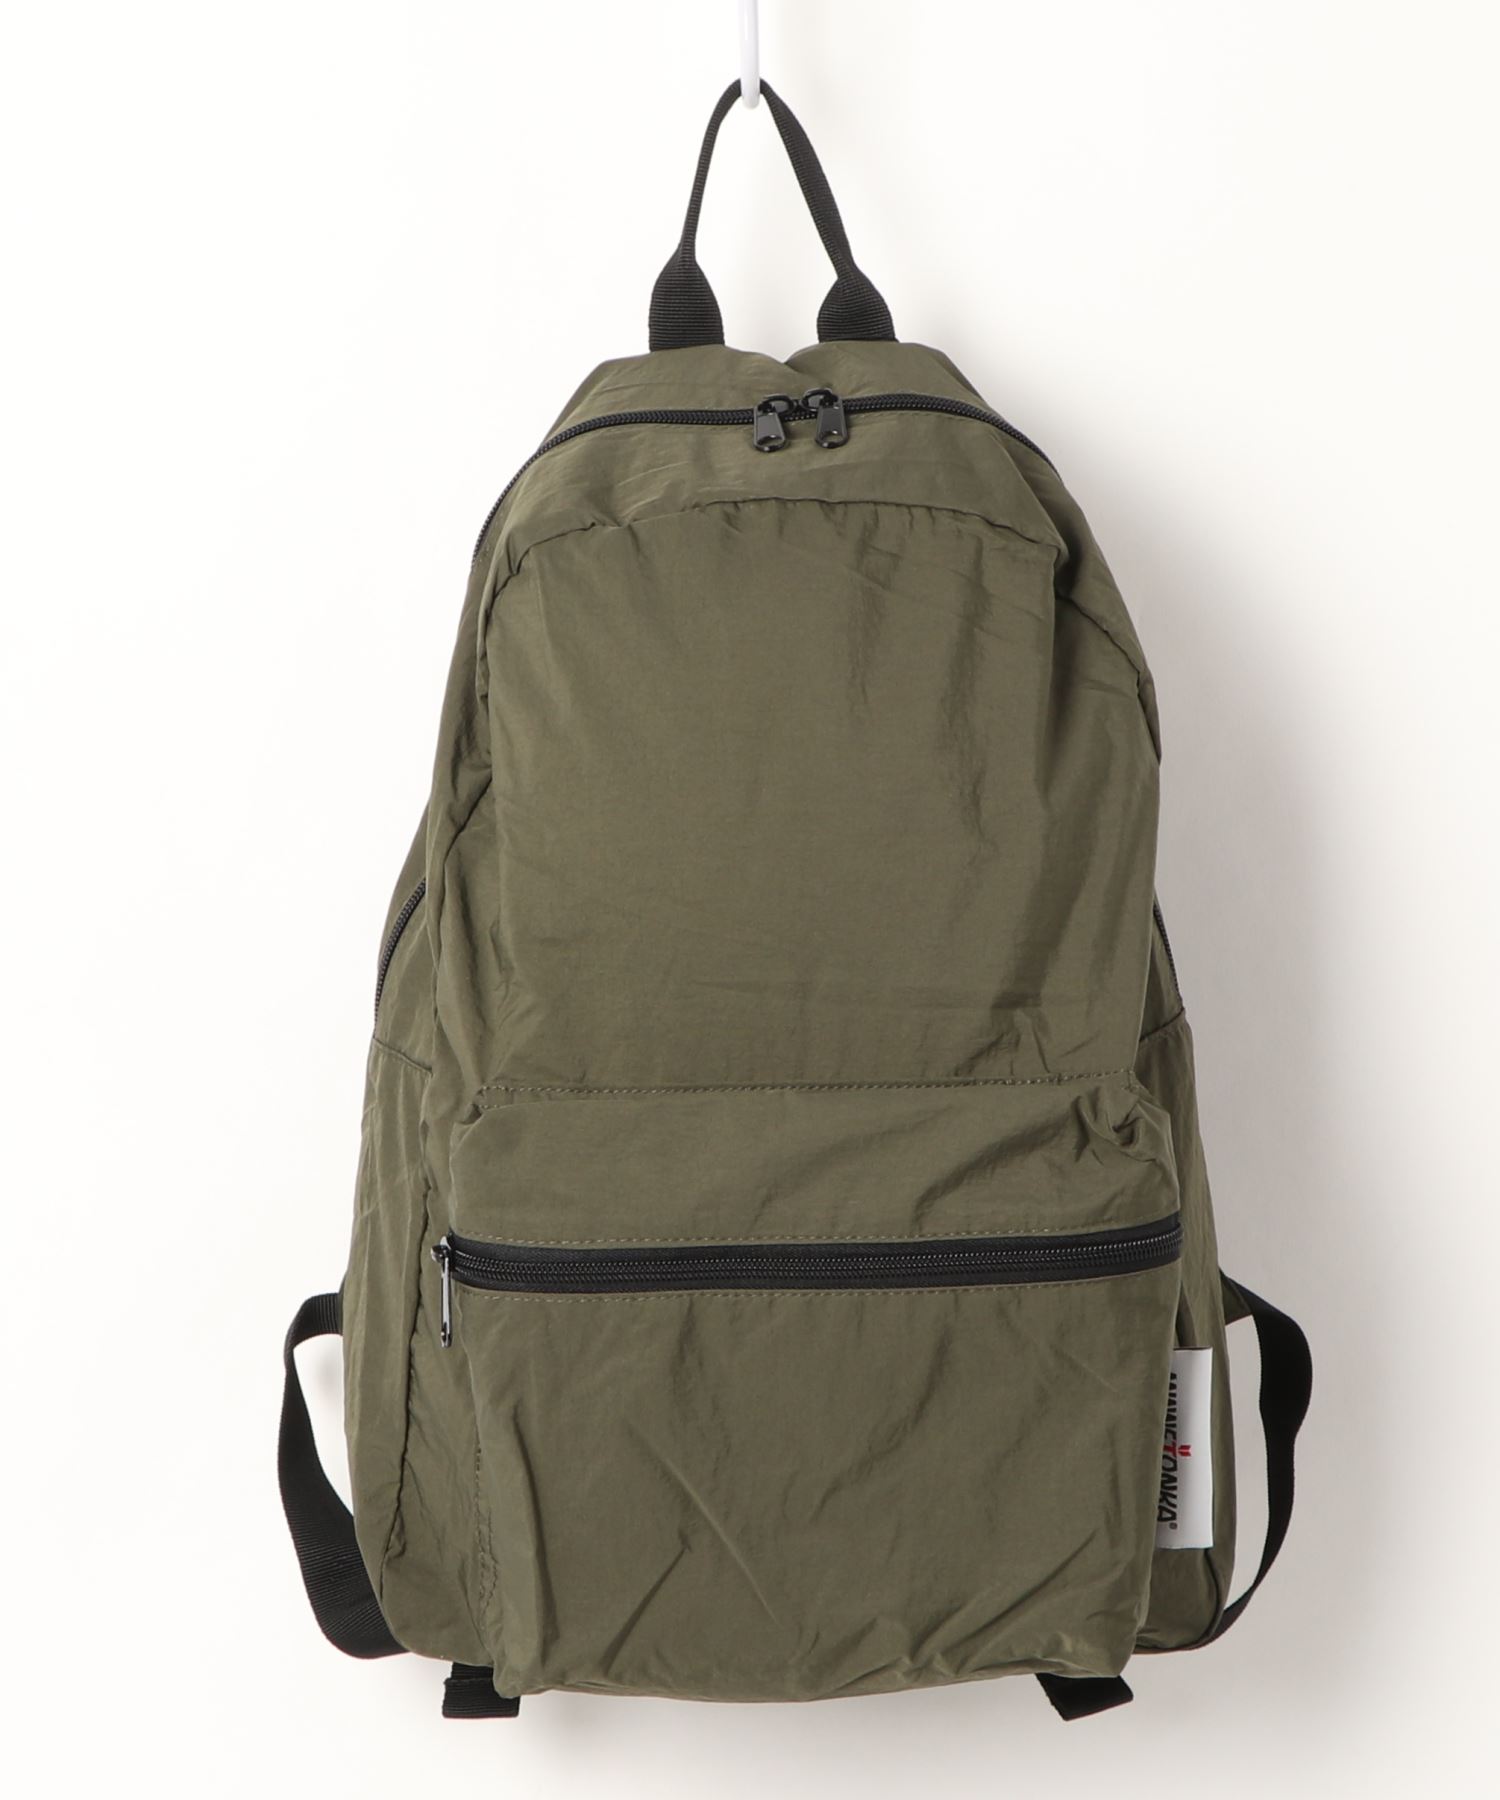 送料無料激安祭 高評価なギフト Minnetonka MINNETONKA ミネトンカ パッカブルバックパック Packable backpack